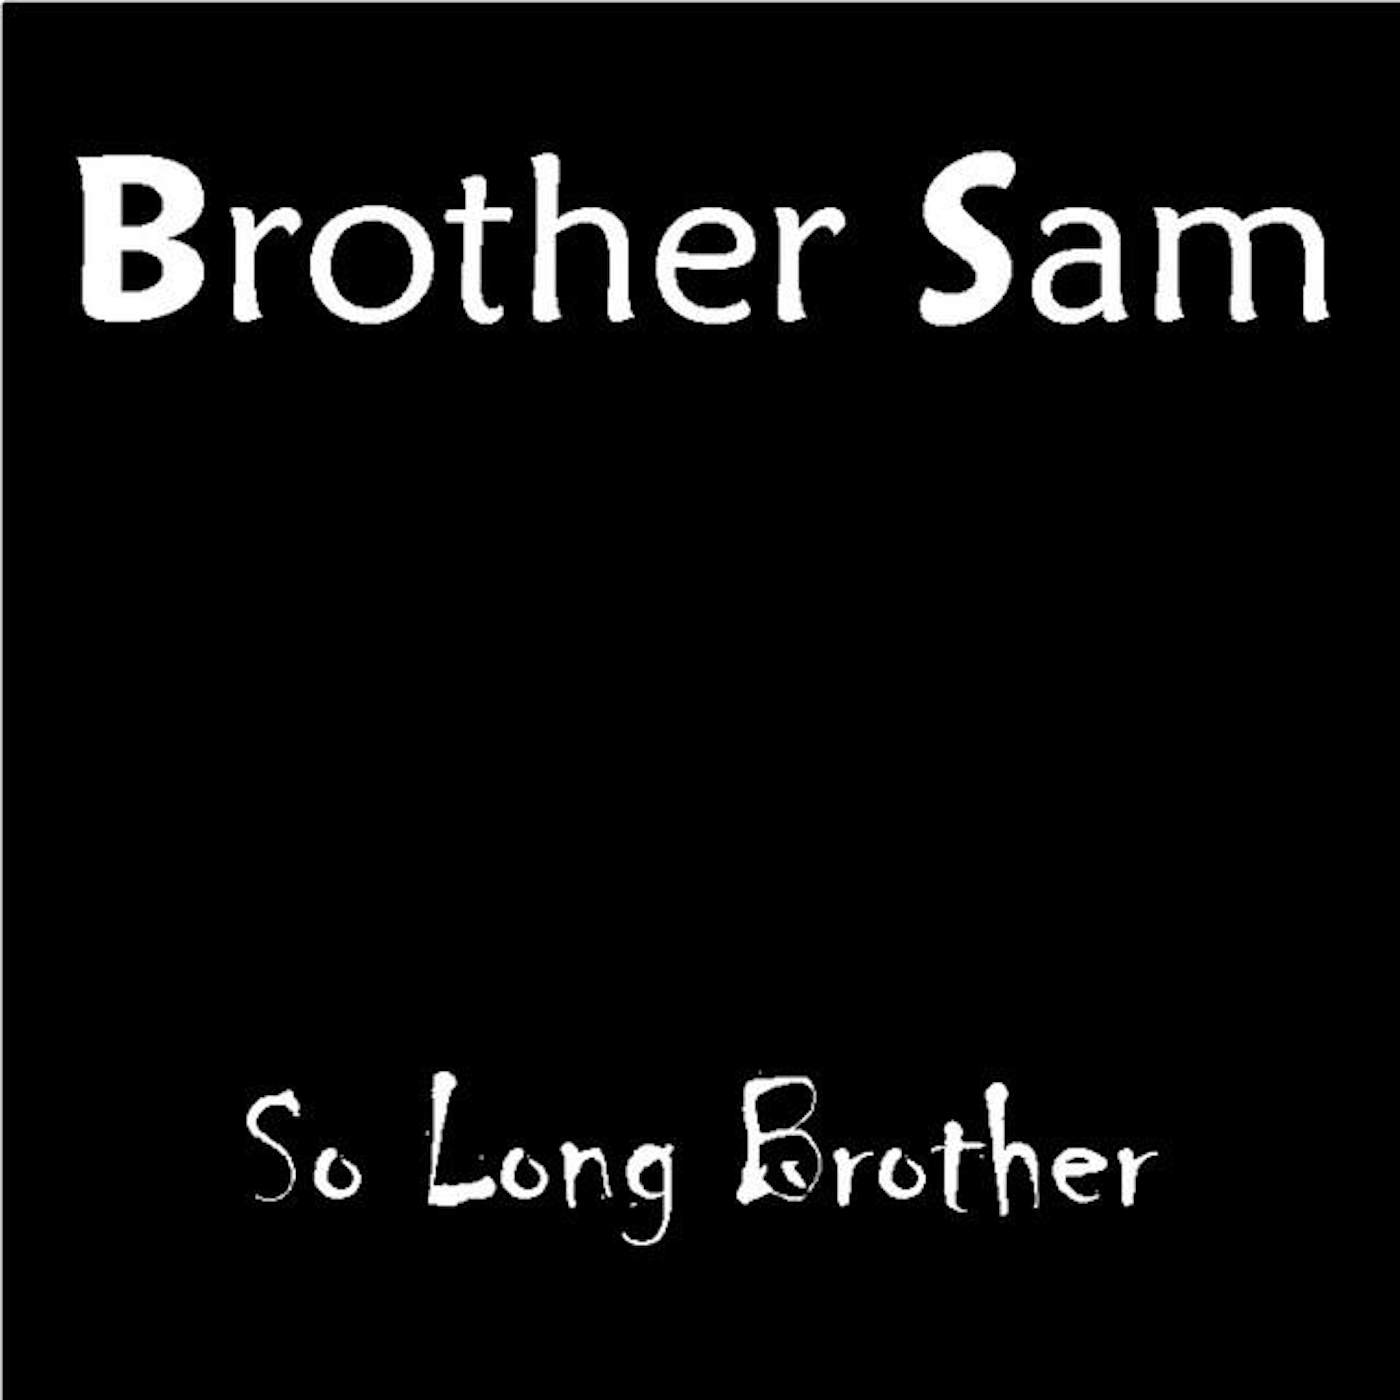 Brother Sam